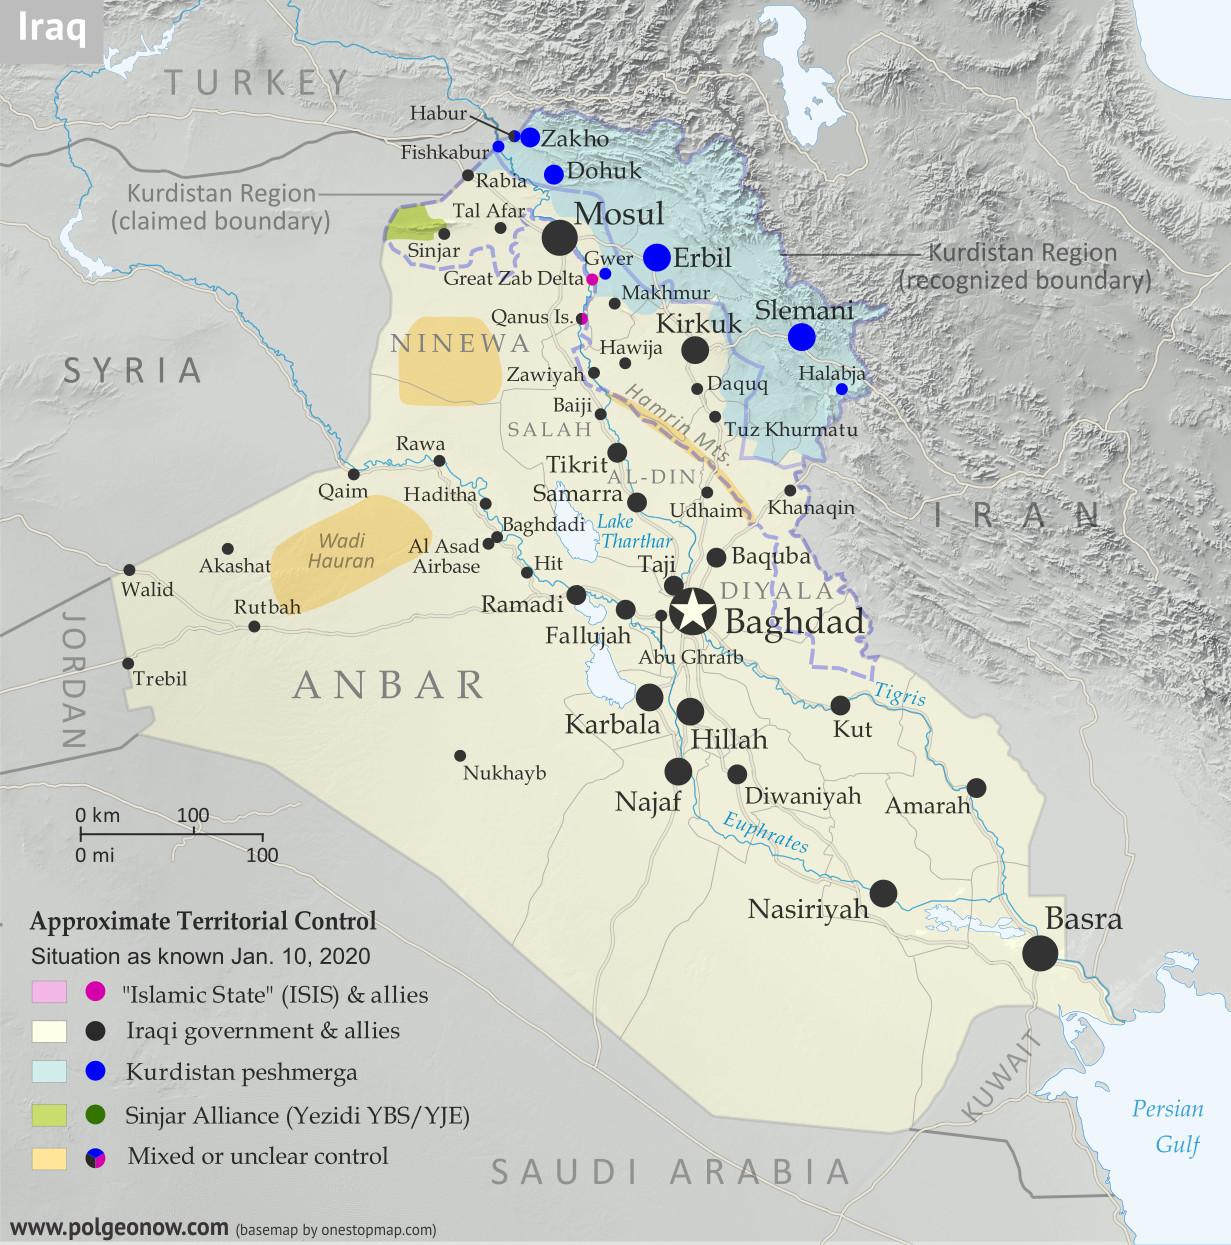 8. Iraq – Iraqi Civil Conflict